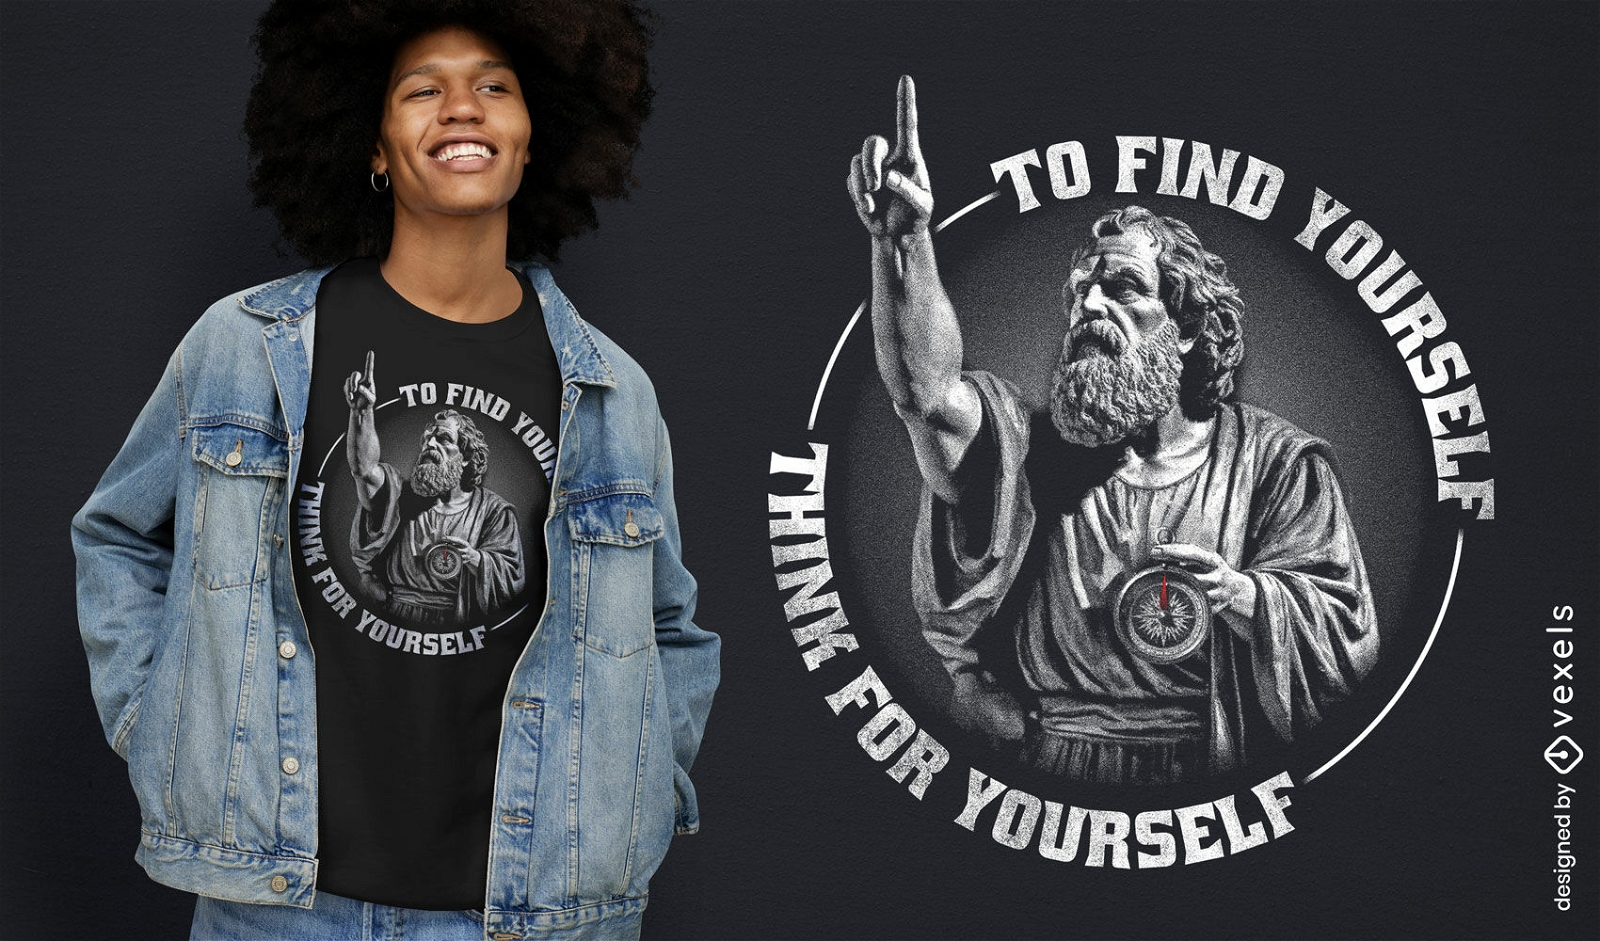 Socrates wisdom quote t-shirt design